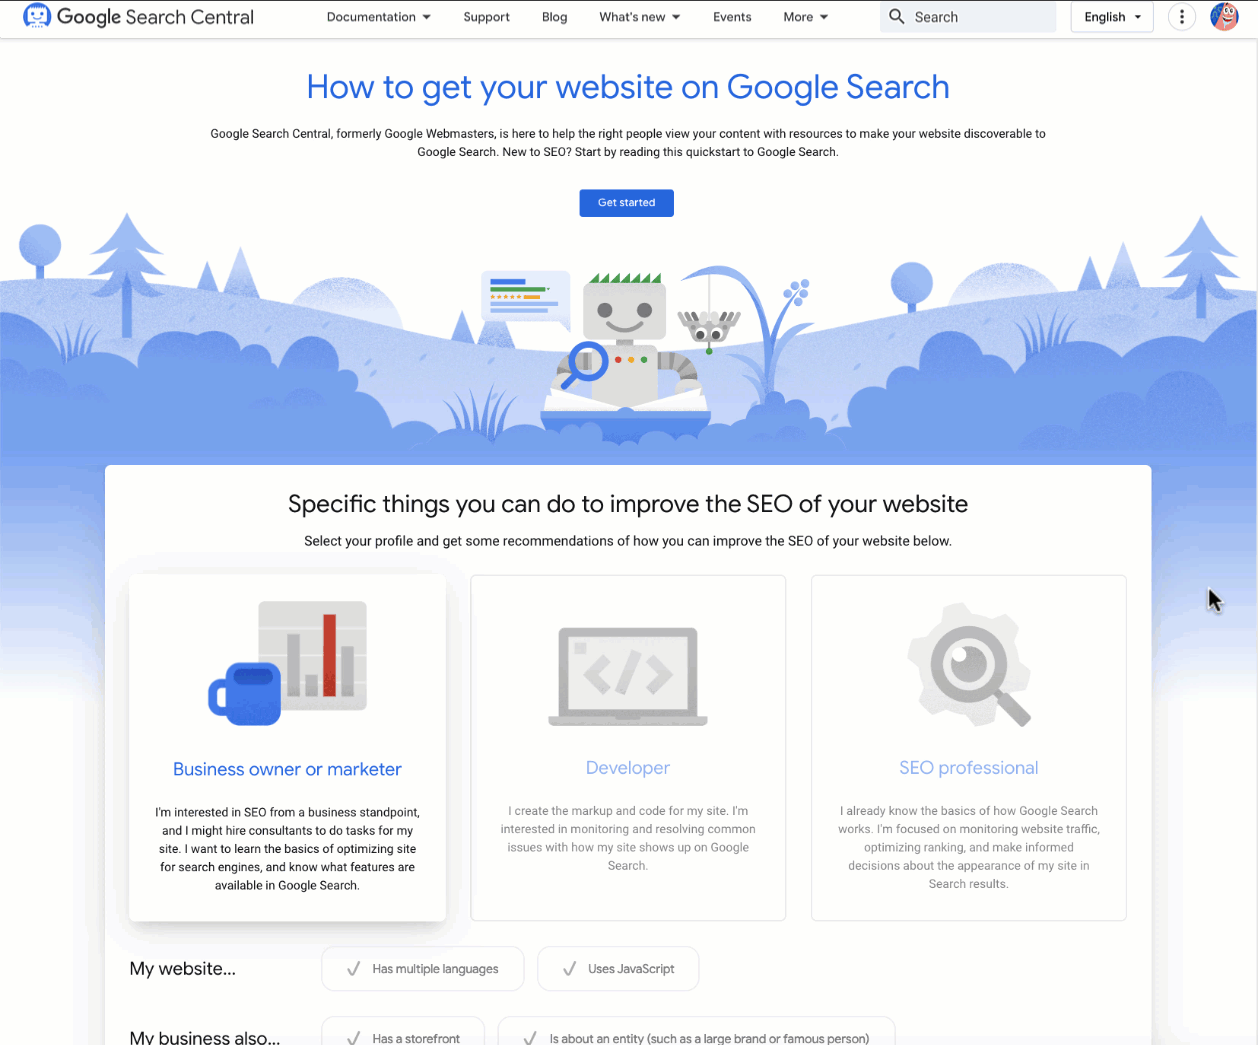 Google Search Central के लैंडिंग पेज पर इंटरैक्टिव चेकलिस्ट